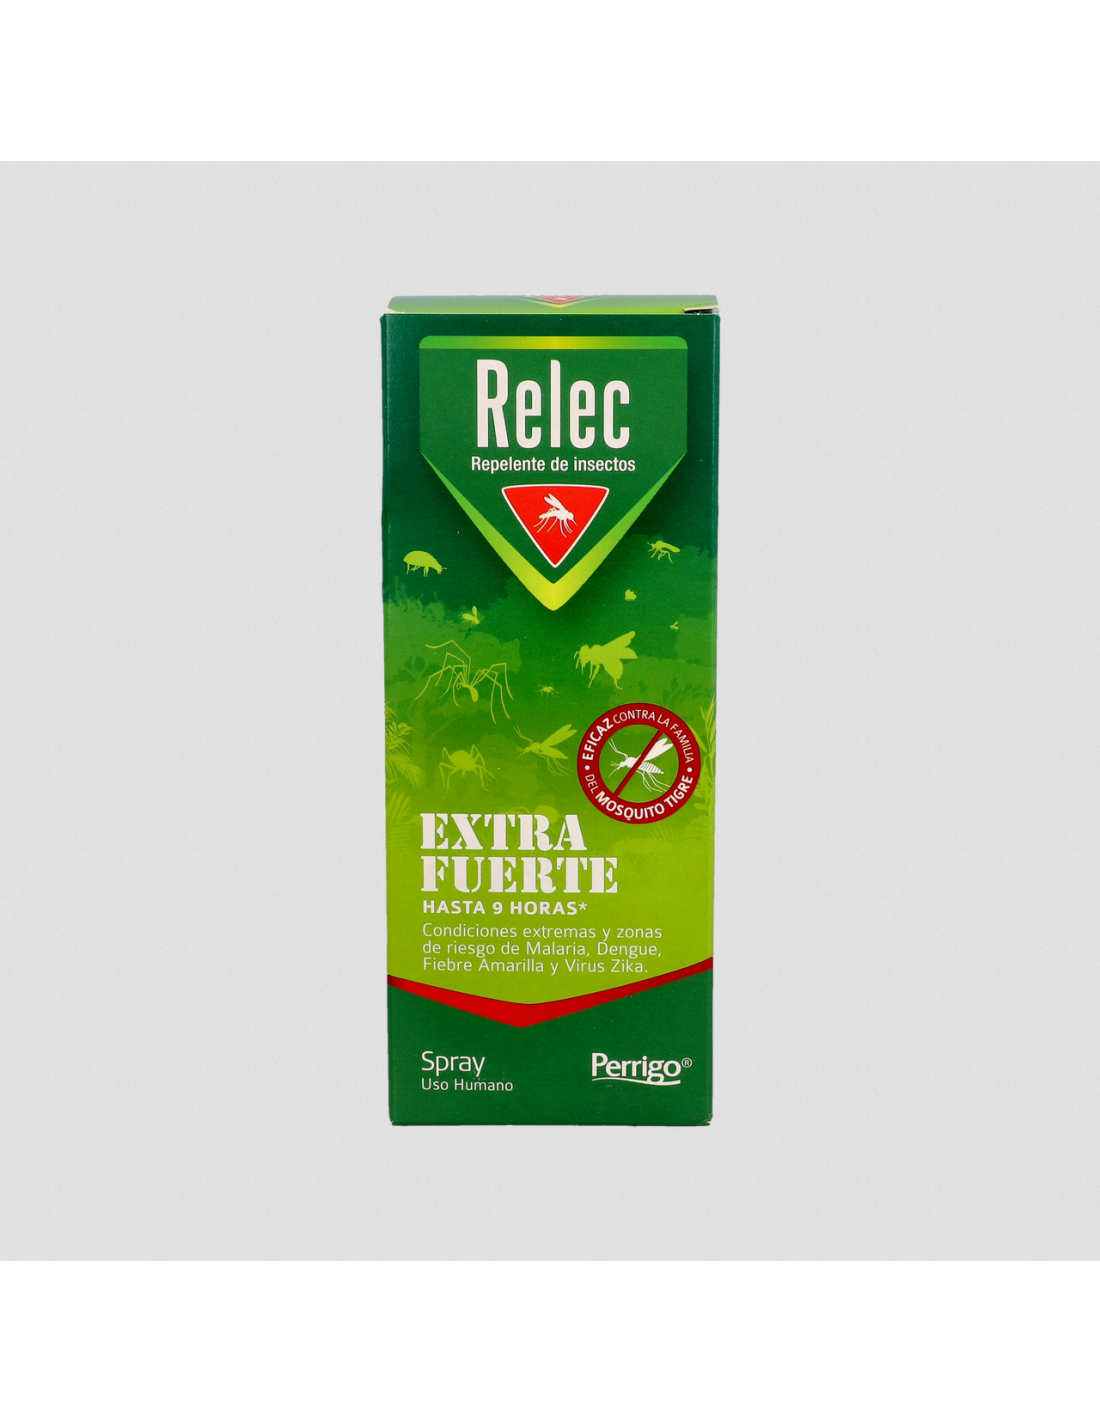 Relec extra fuerte 50% spray repelente 75 ml